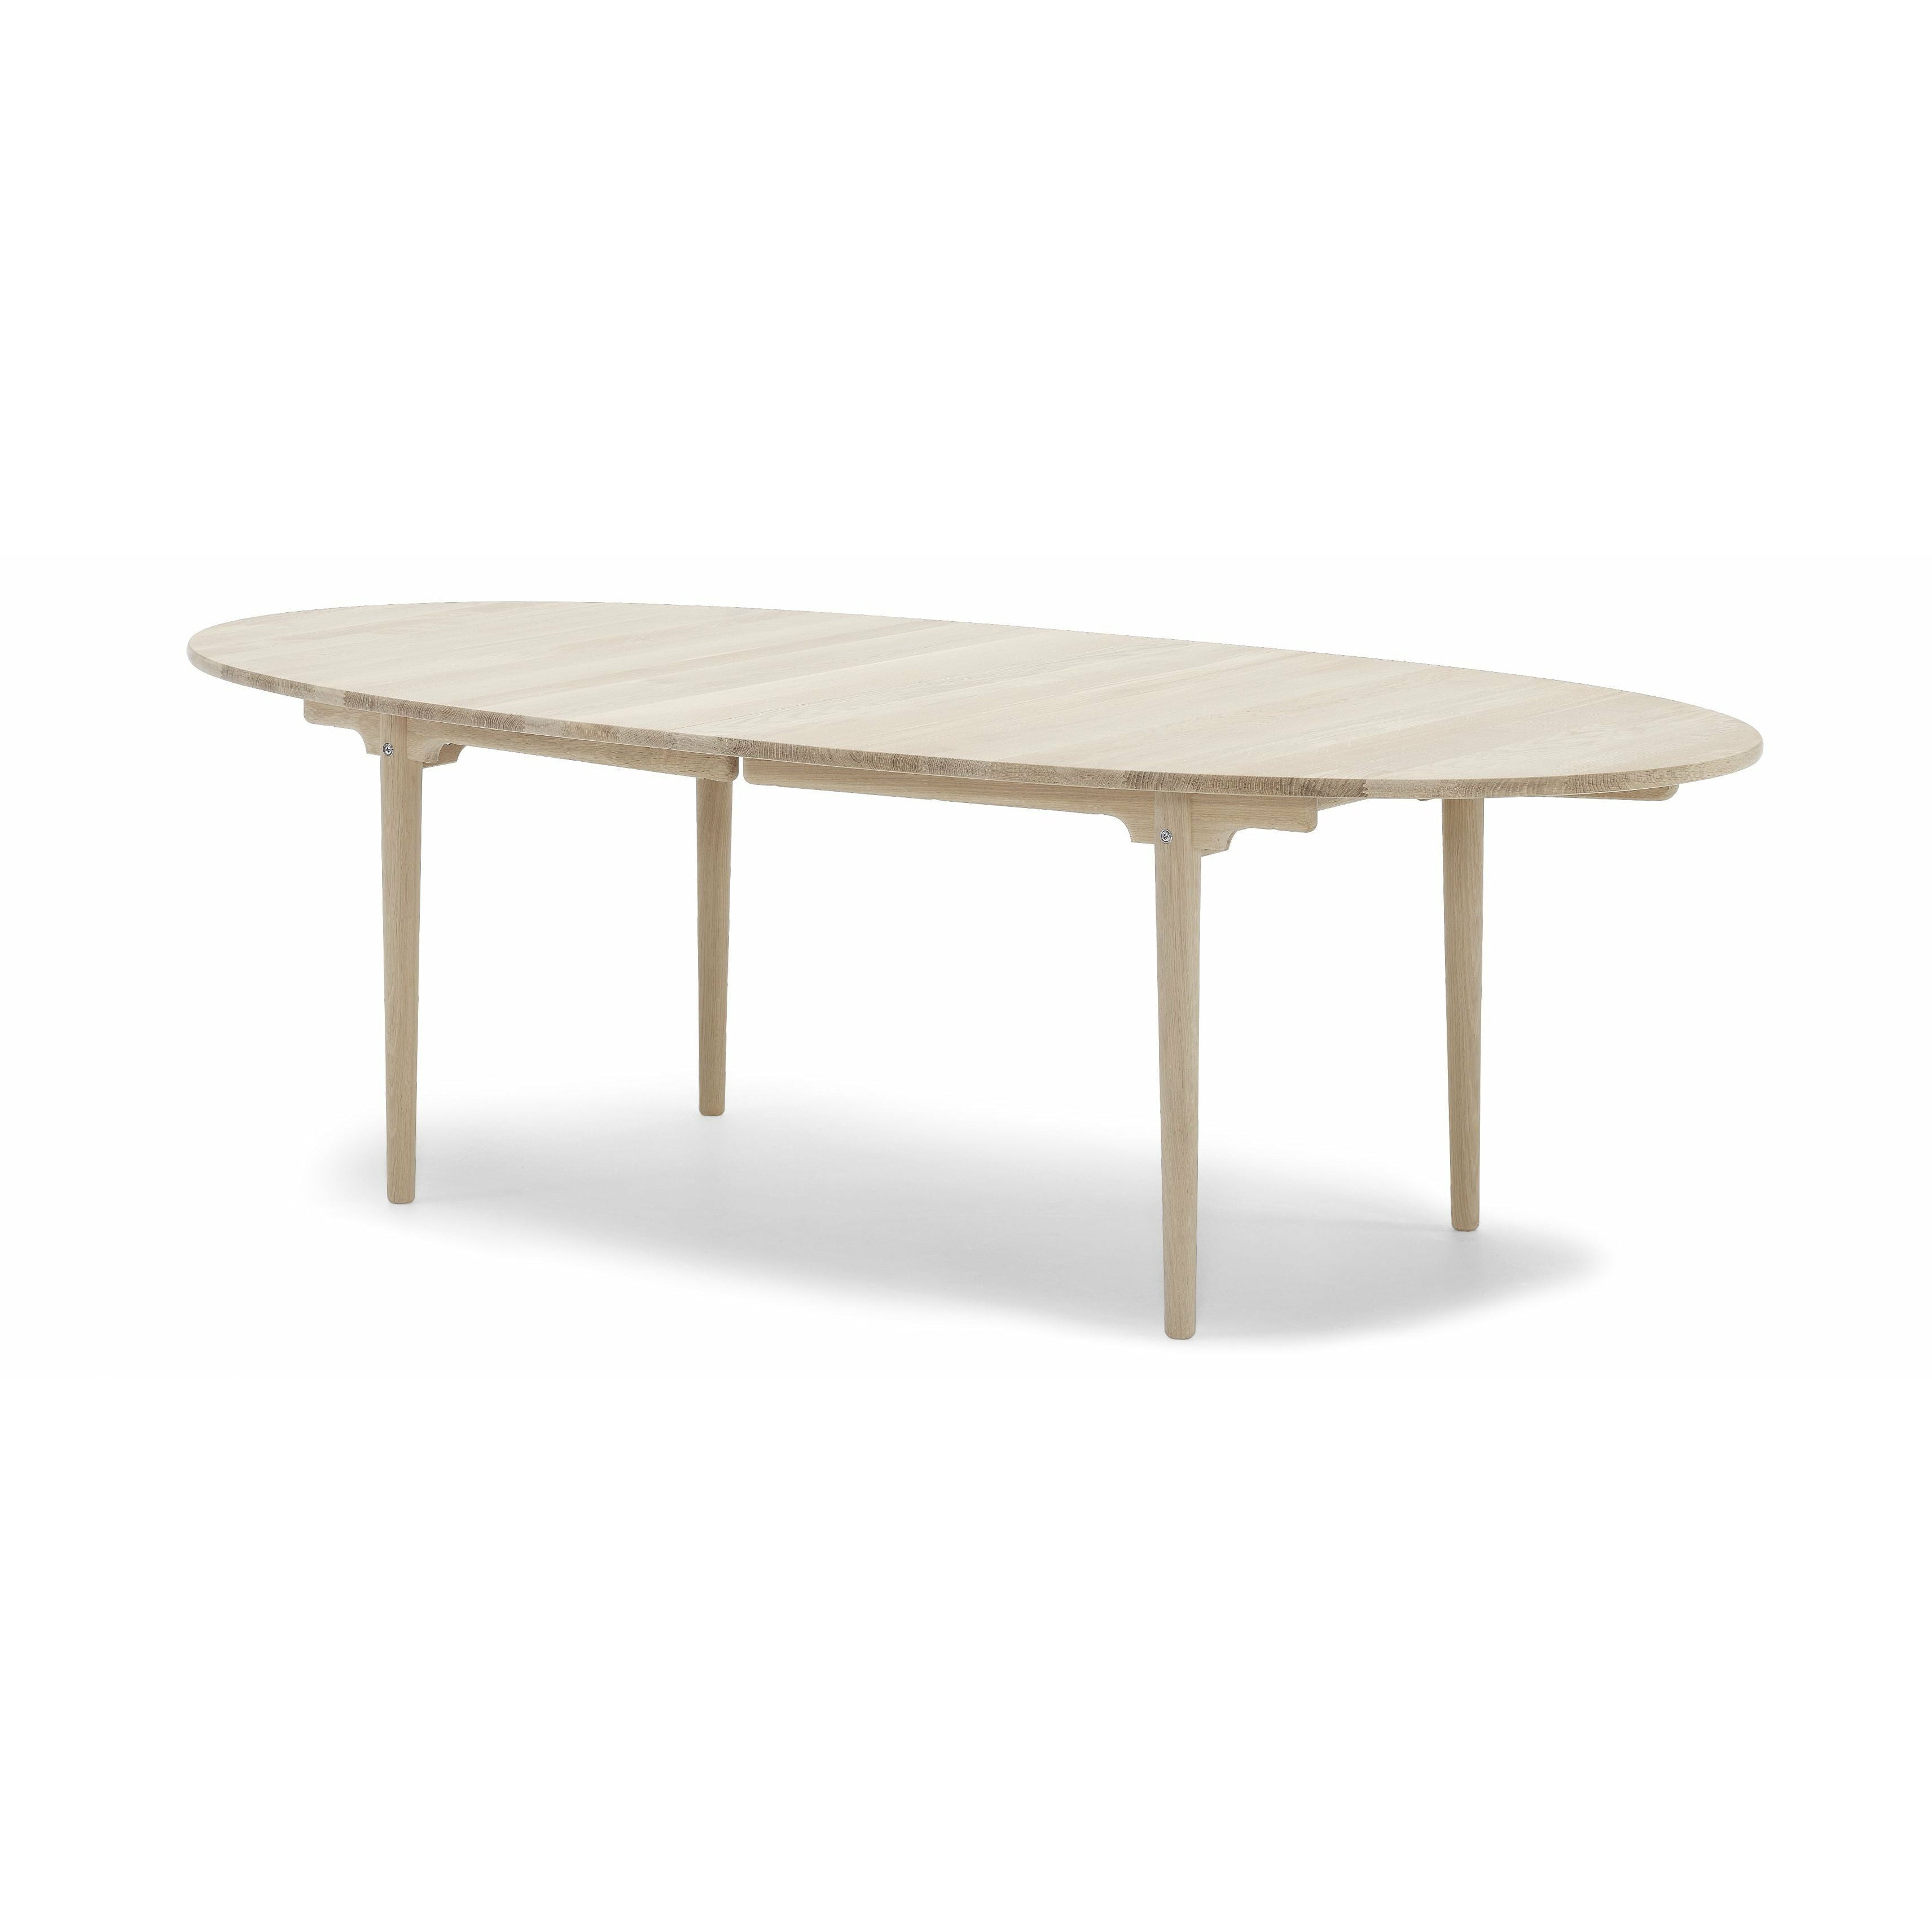 Carl Hansen CH339 matbord med dragning för 2 plattor, ekvål